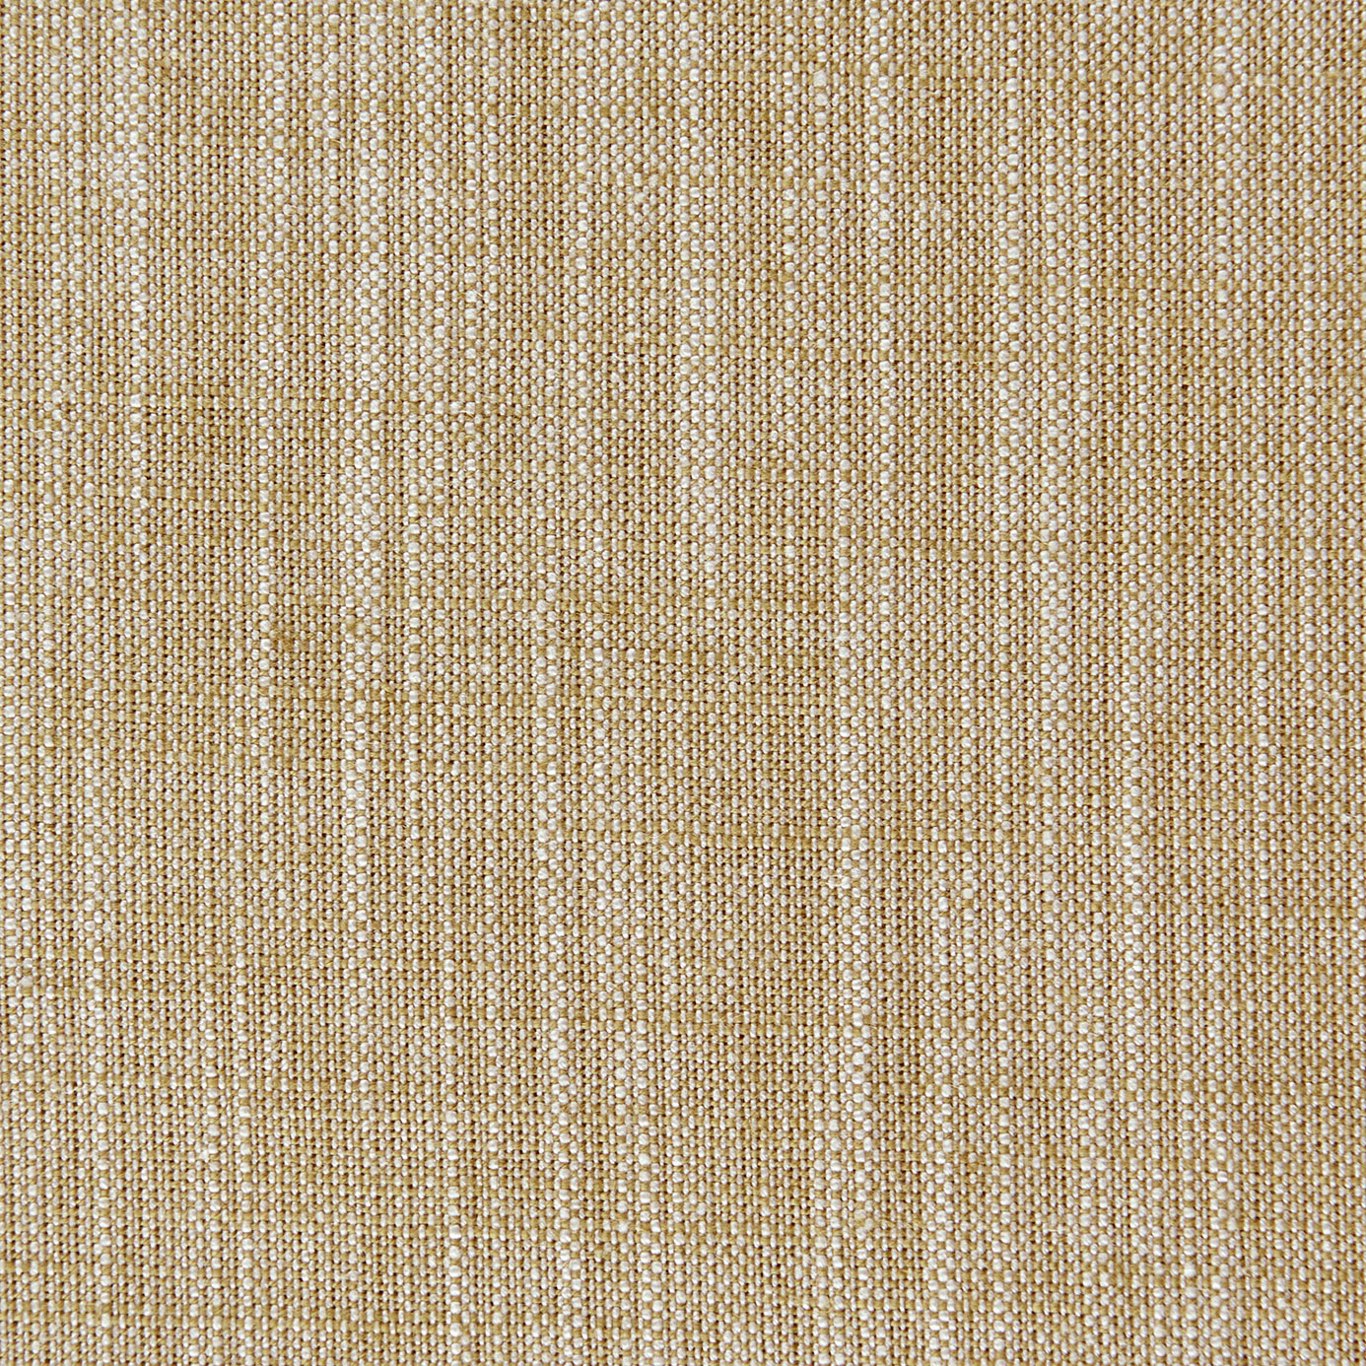 Biarritz Fabric by Clarke & Clarke - F0965/40 - Sand